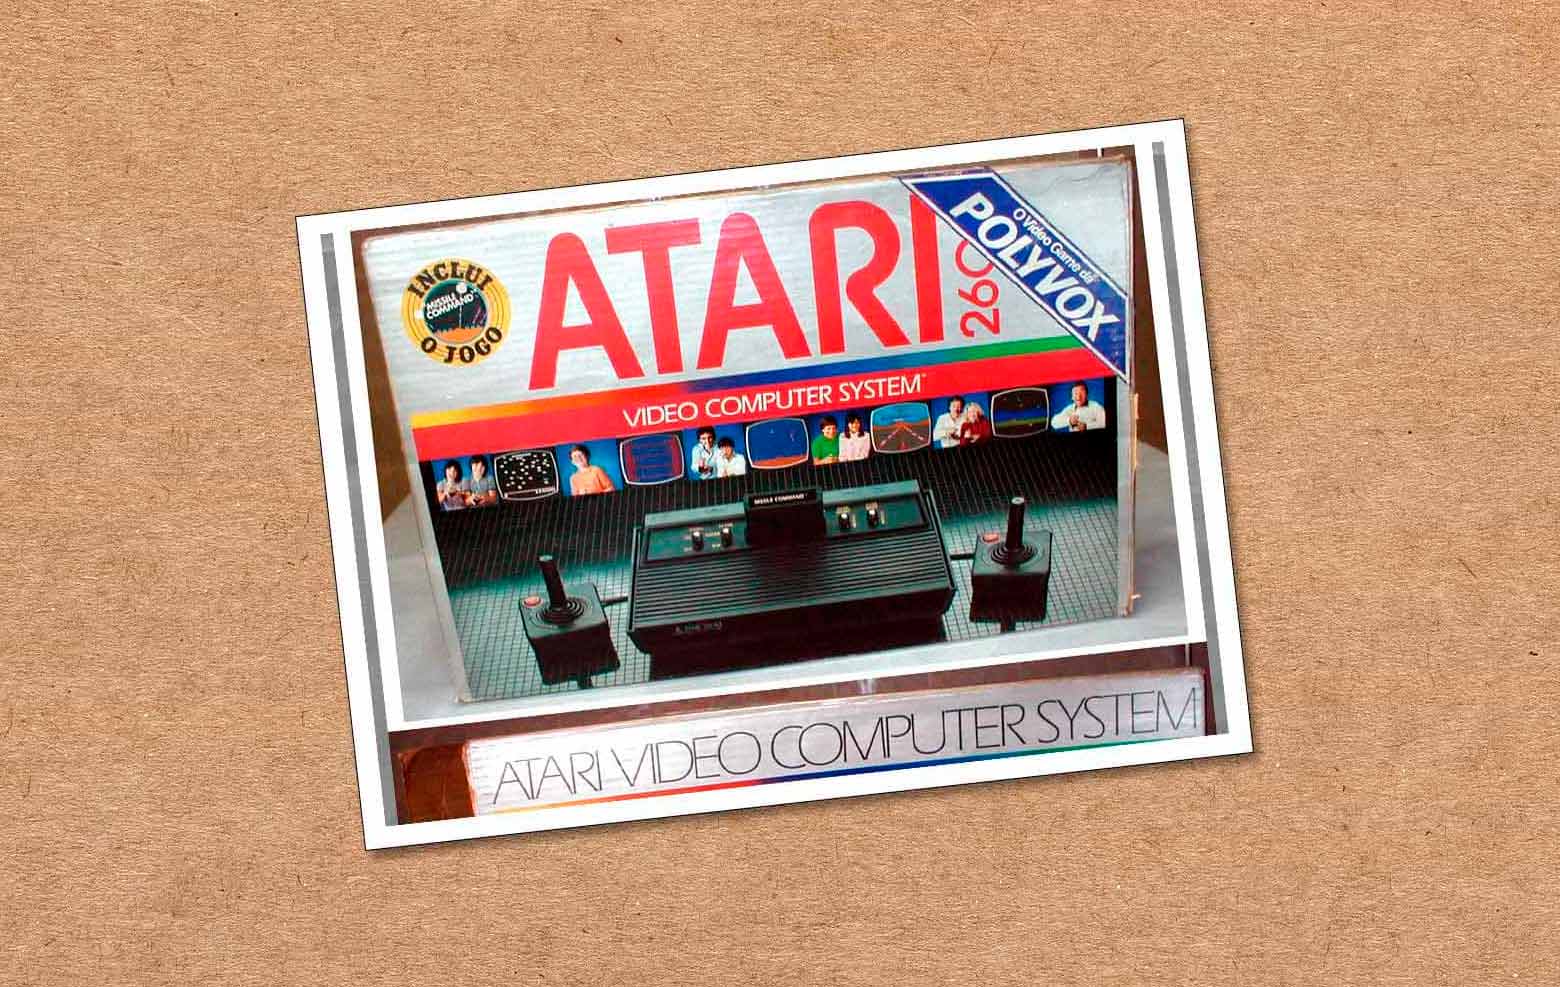 O jeitinho, os clones e a chegada do Atari ao Brasil